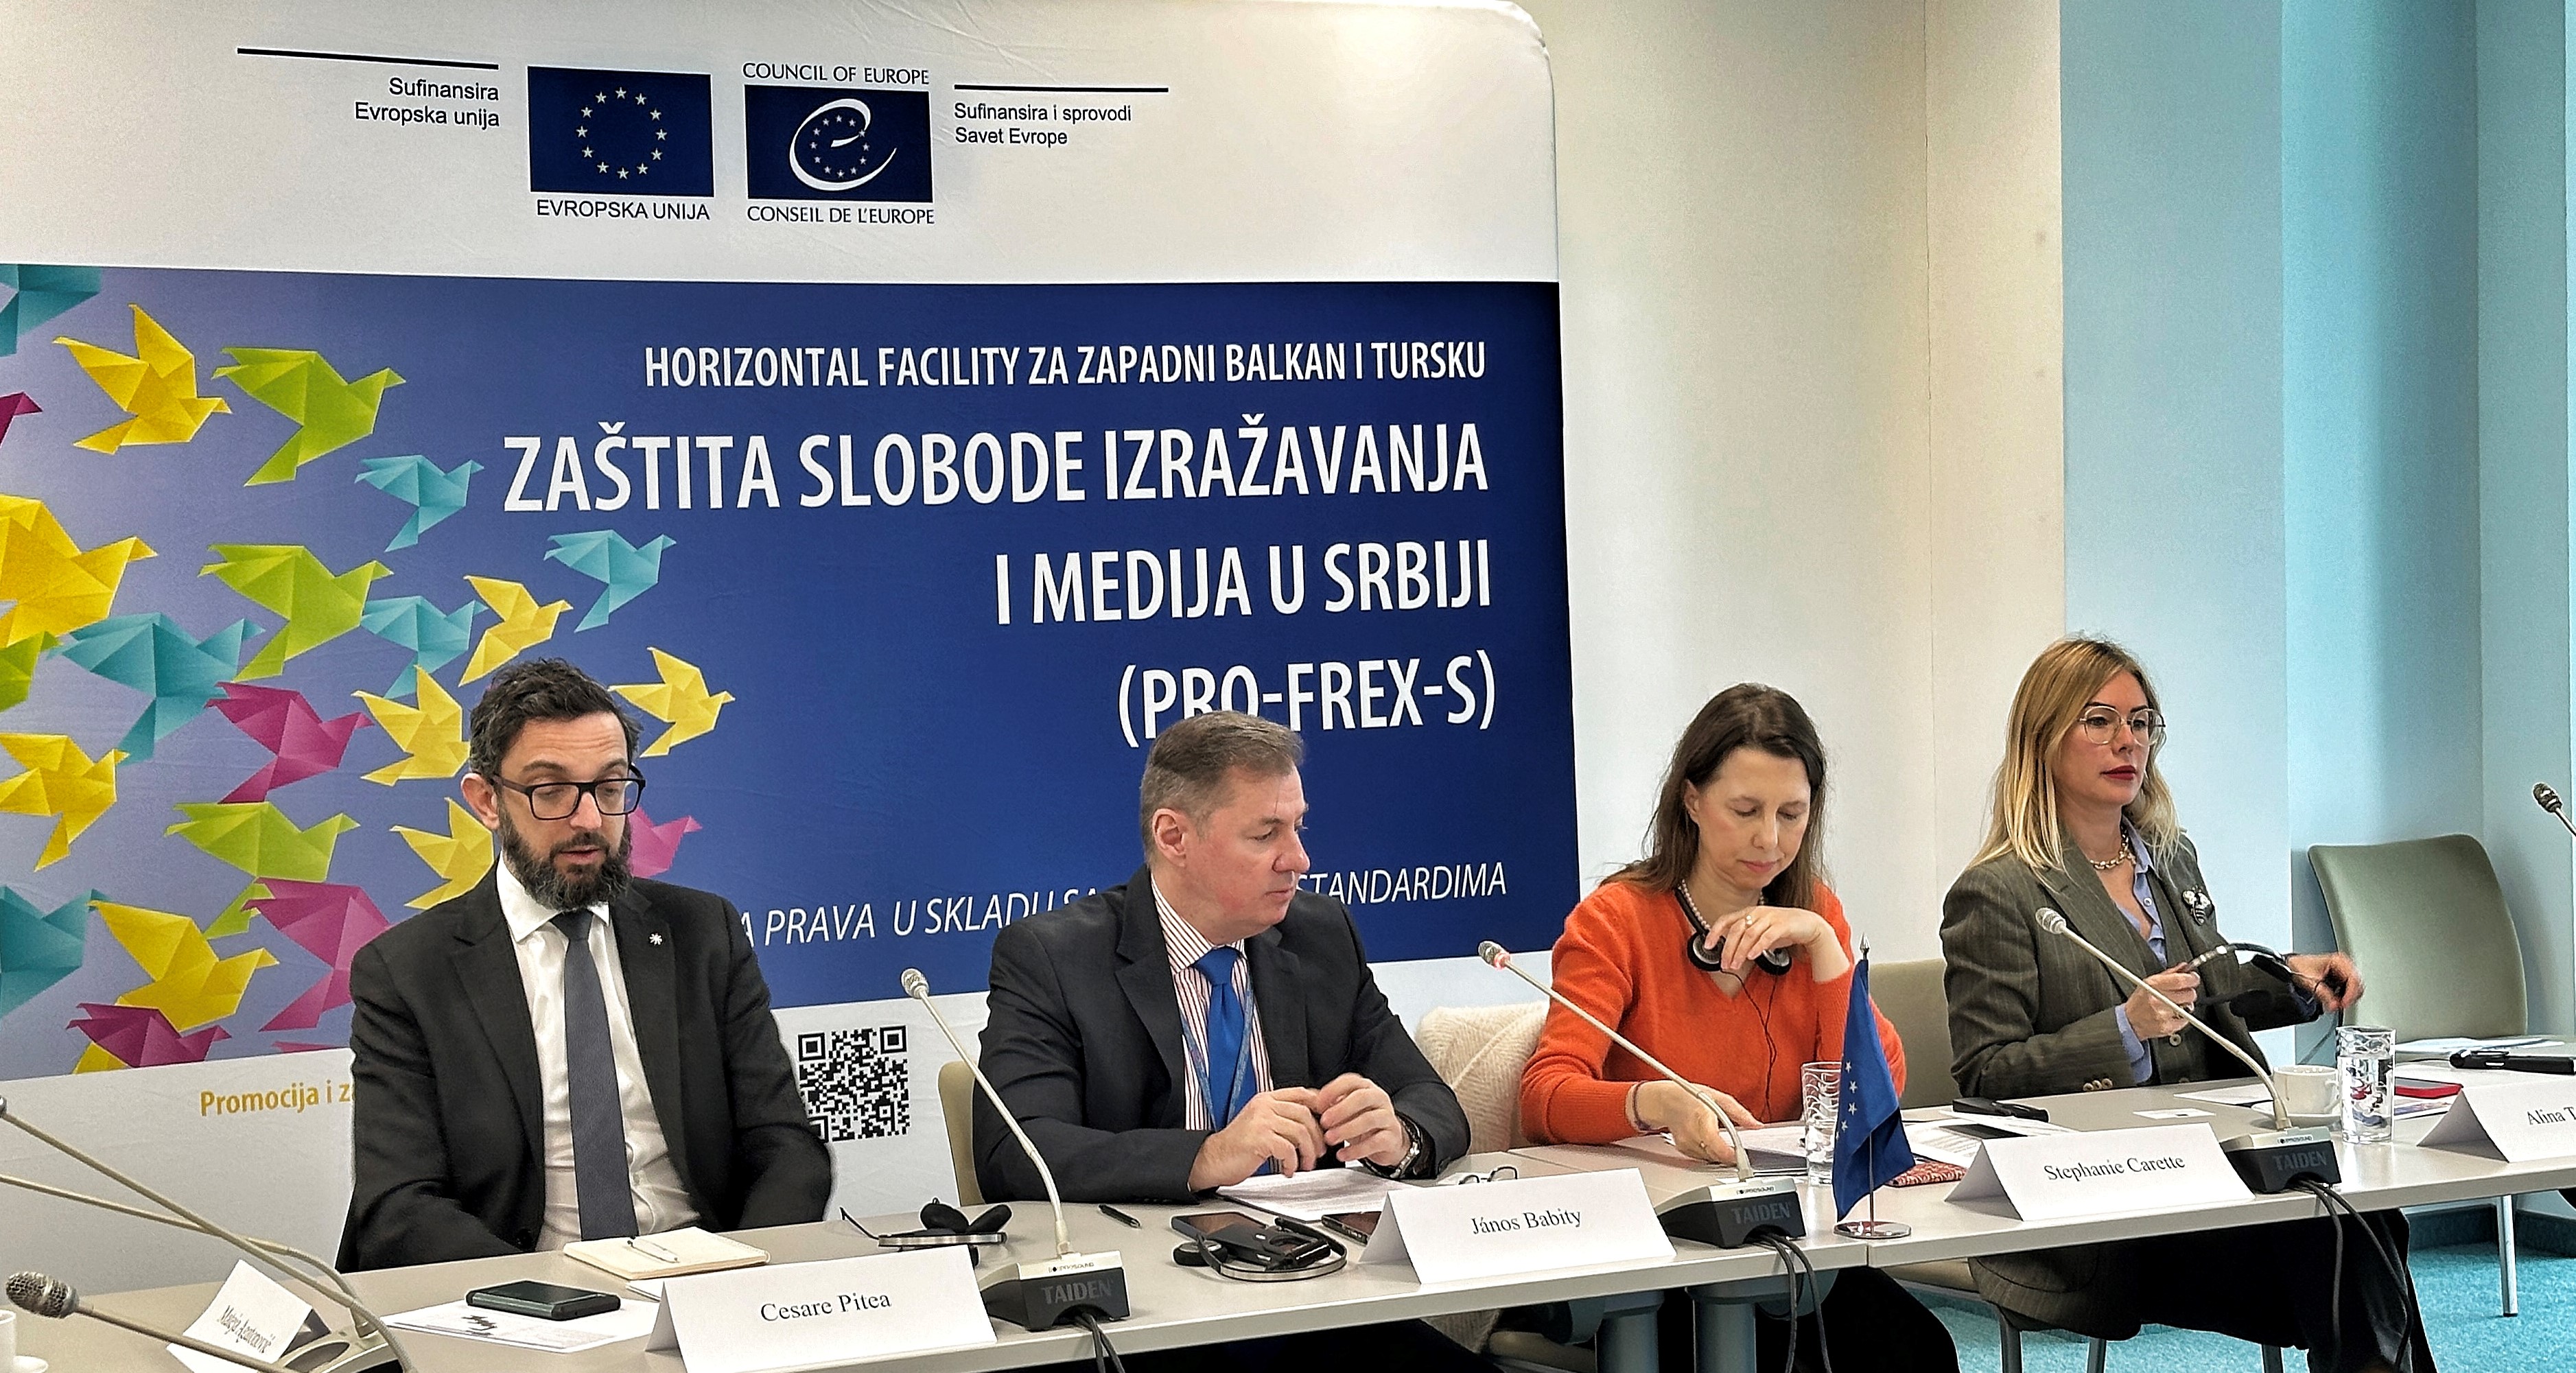 Приступ информацијама, регулисање електронских медија и безбедност новинара ће бити фокус пројекта у Србији